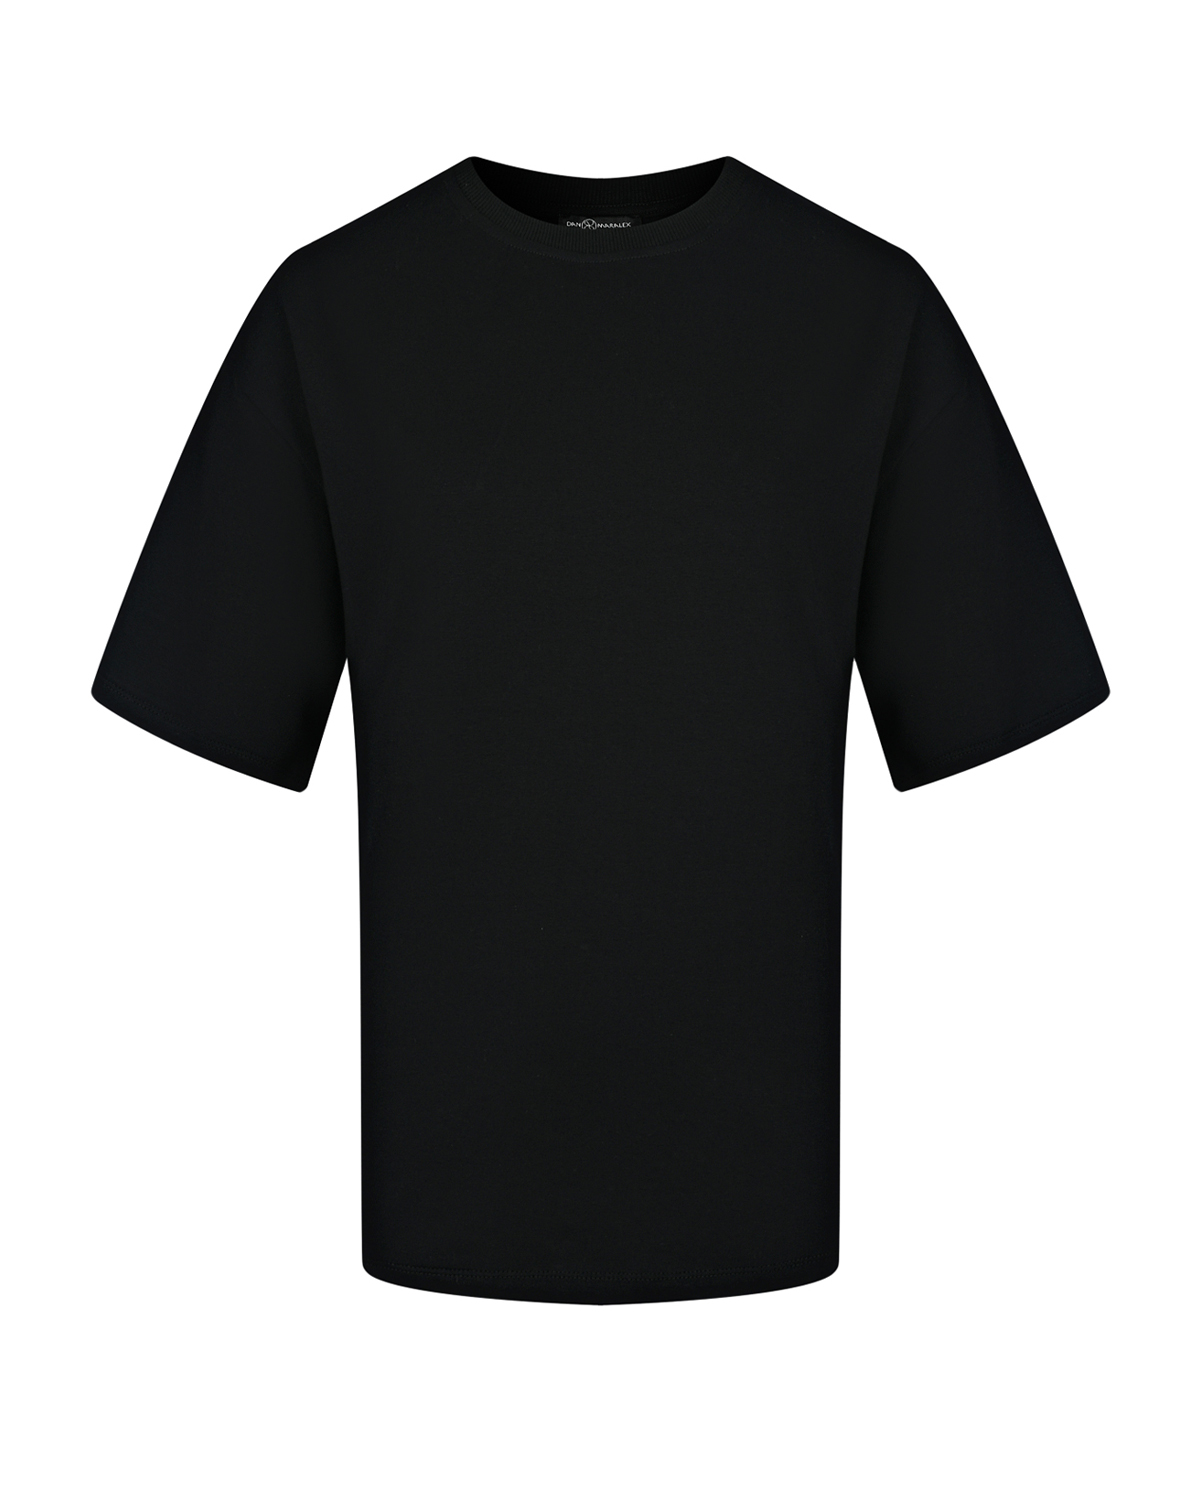 Черная футболка oversize Dan Maralex, размер 42, цвет черный - фото 1